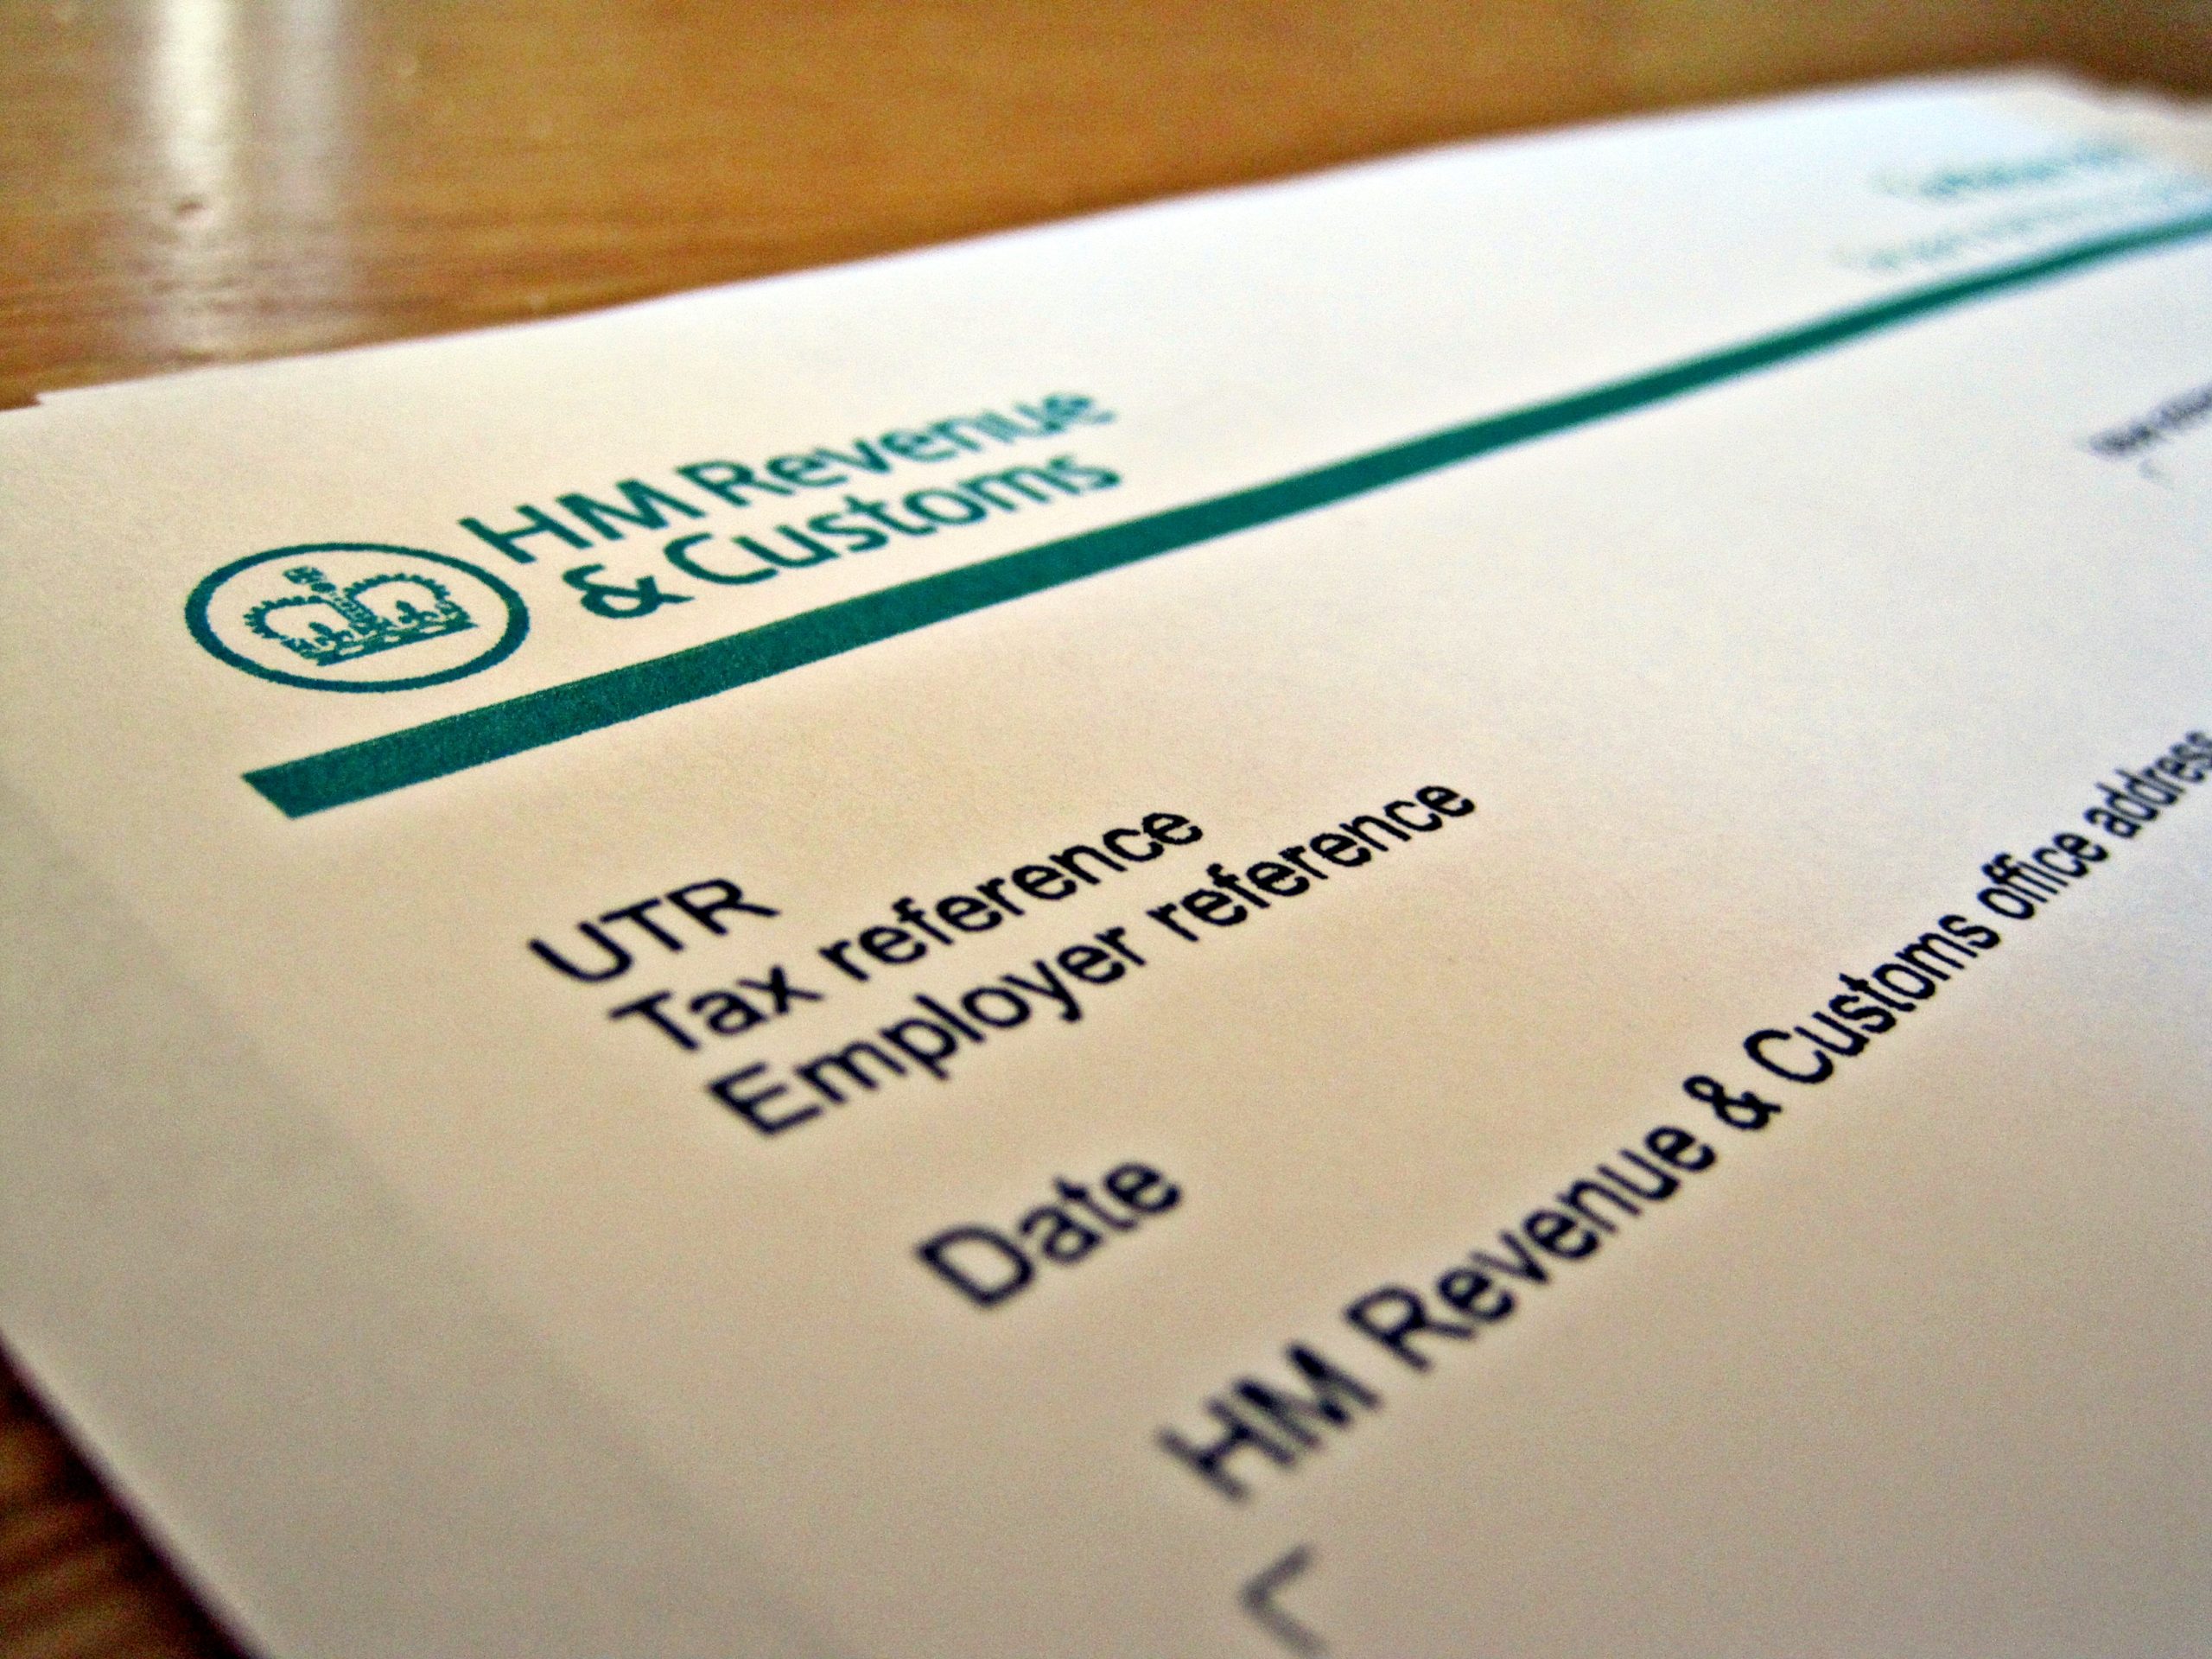 A HMRC Self Assessment Tax Return form